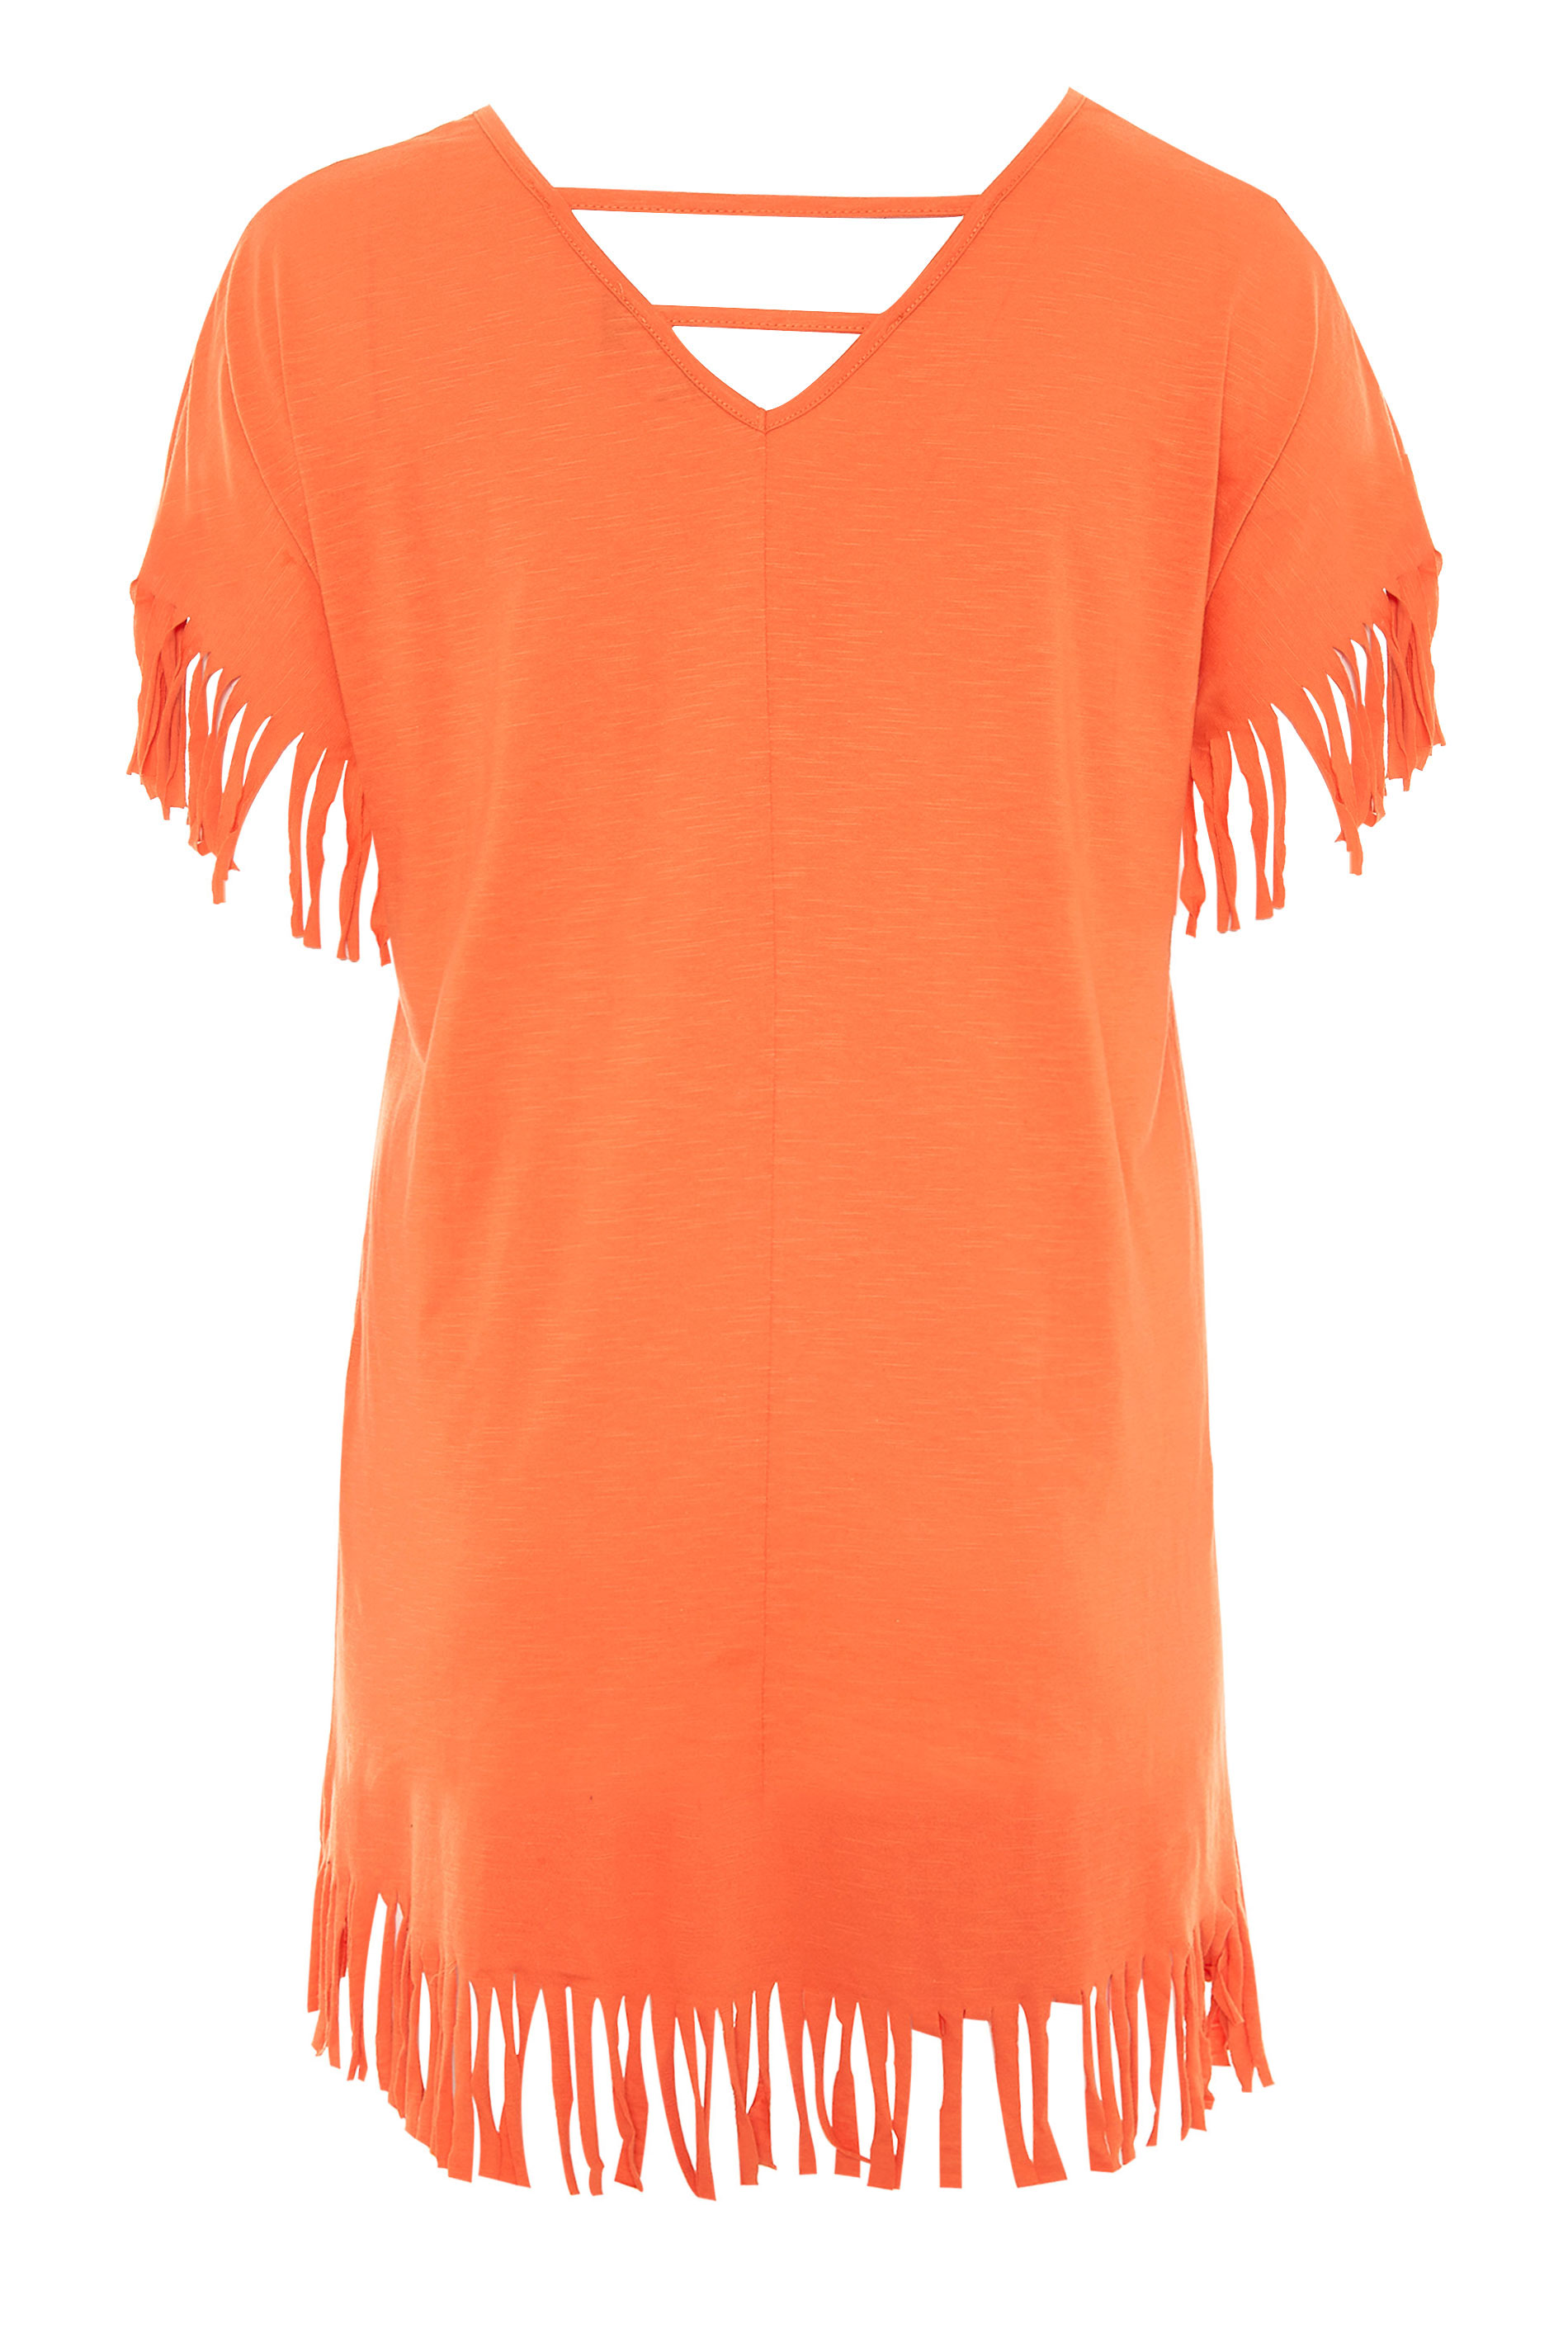 Grande taille  Tops Grande taille  Tops à Slogans | T-Shirt Orange à Franges Slogan 'Weekend Mood' - KR47482